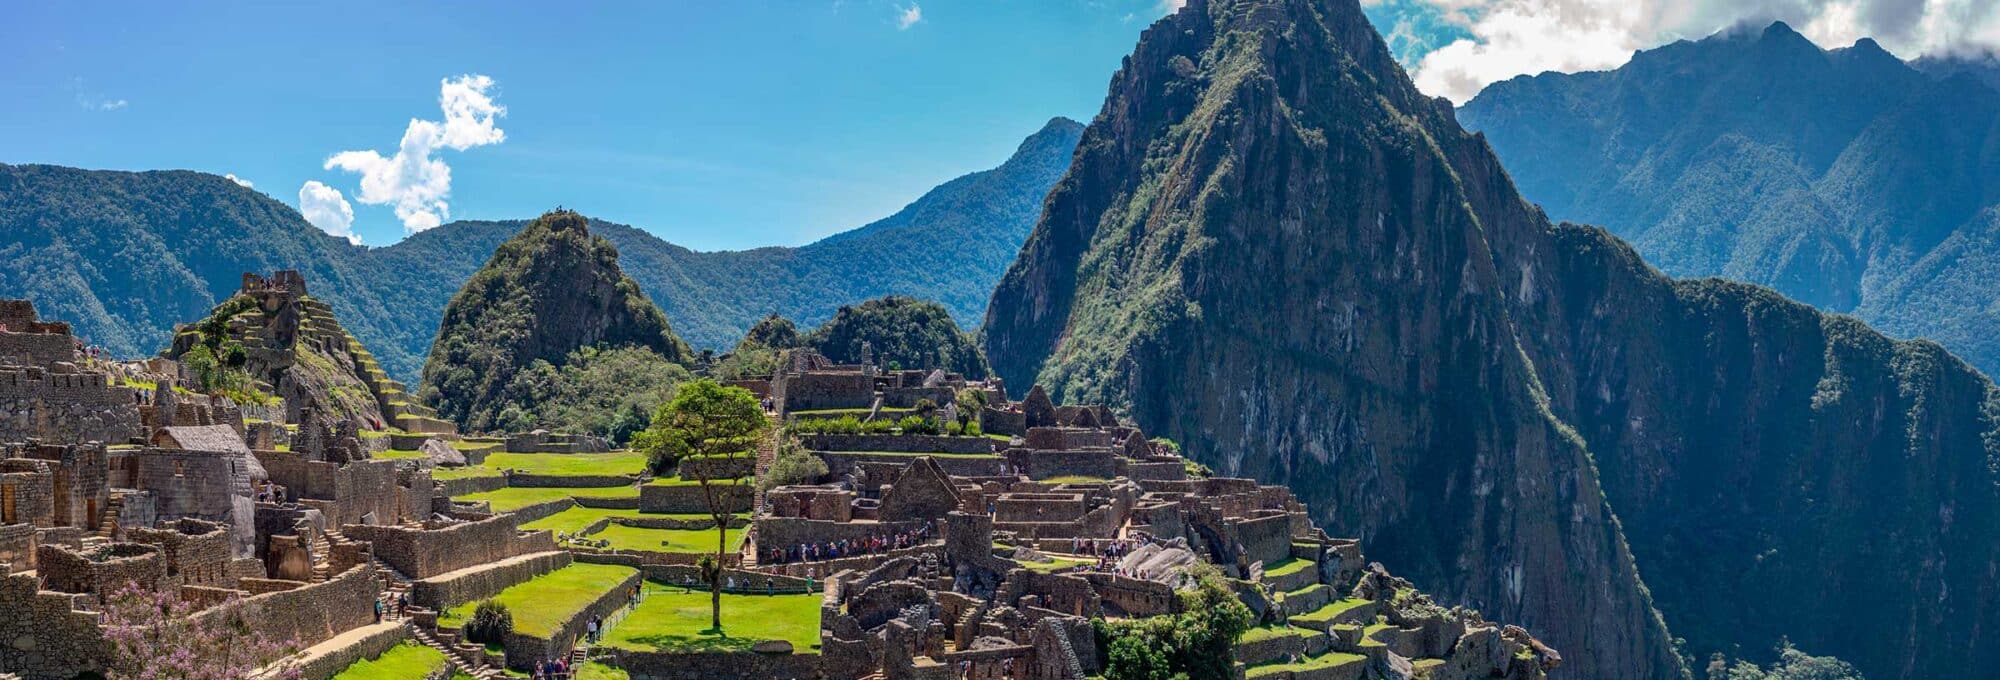 Royal Short Inca Trail 2 Days to Machu Picchu